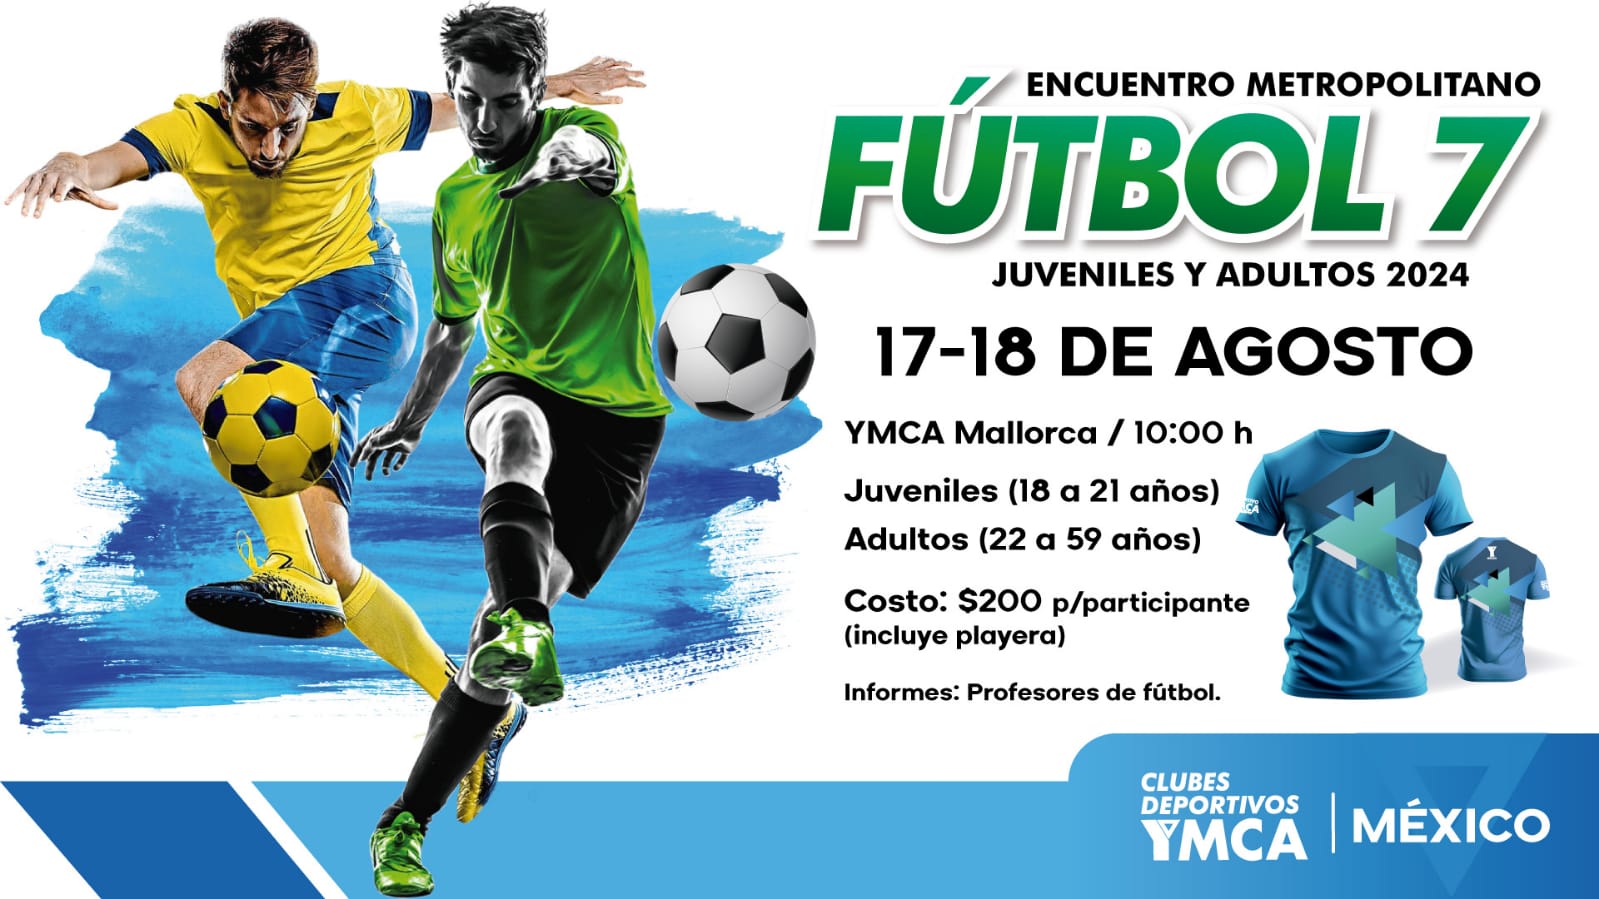 Encuentro Metropolitano Futbol 7